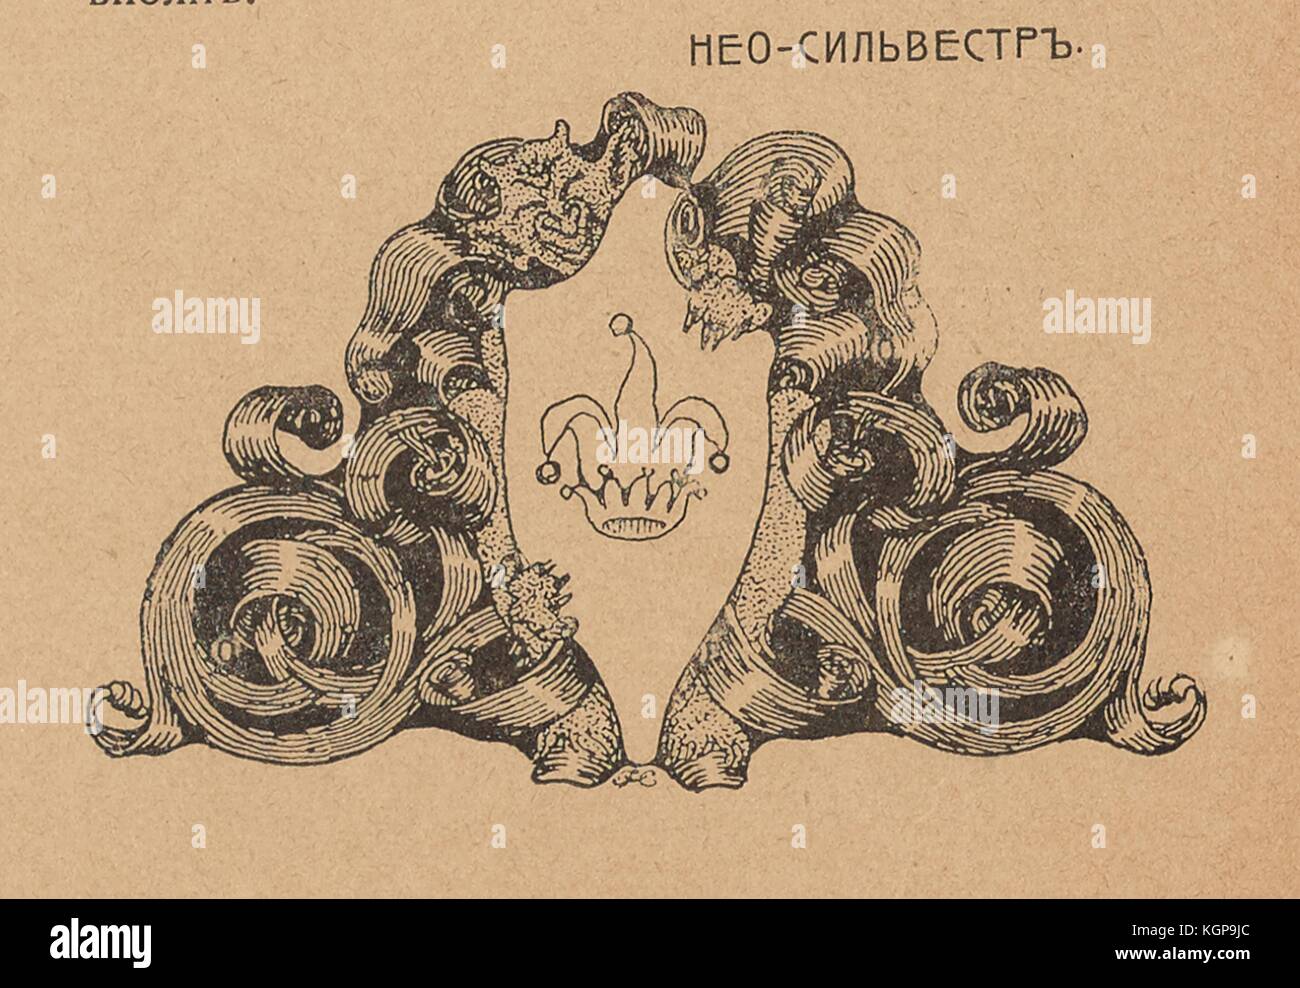 Illustration de la revue satirique russe Maski (masques) représentant une crête avec un chapeau de bouffon sur elle tenue par une créature mythique, entourée d'un motif en spirale complexe, avec le texte 'Neo-Silvestr', peut-être le nom de l'artiste, 1906. () Banque D'Images